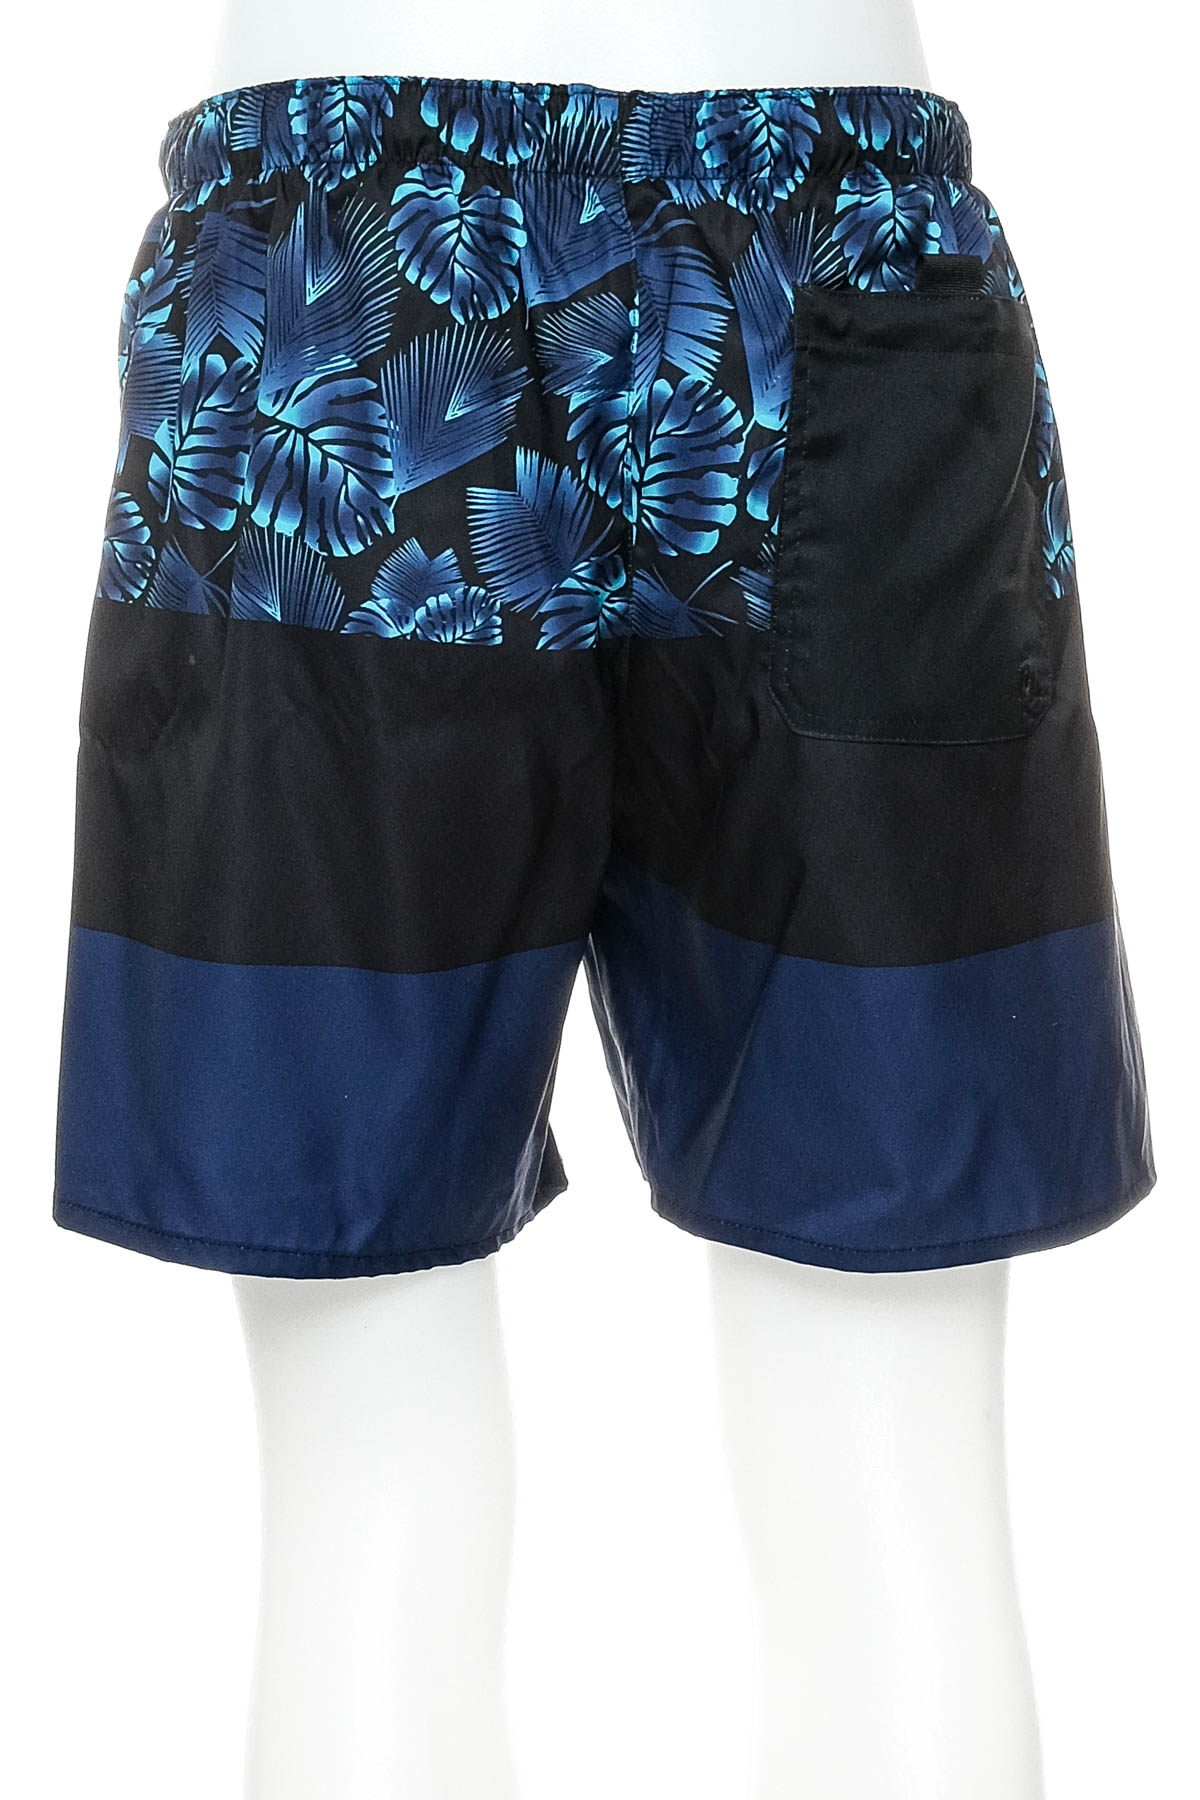 Men's shorts - OLAIAN - 1